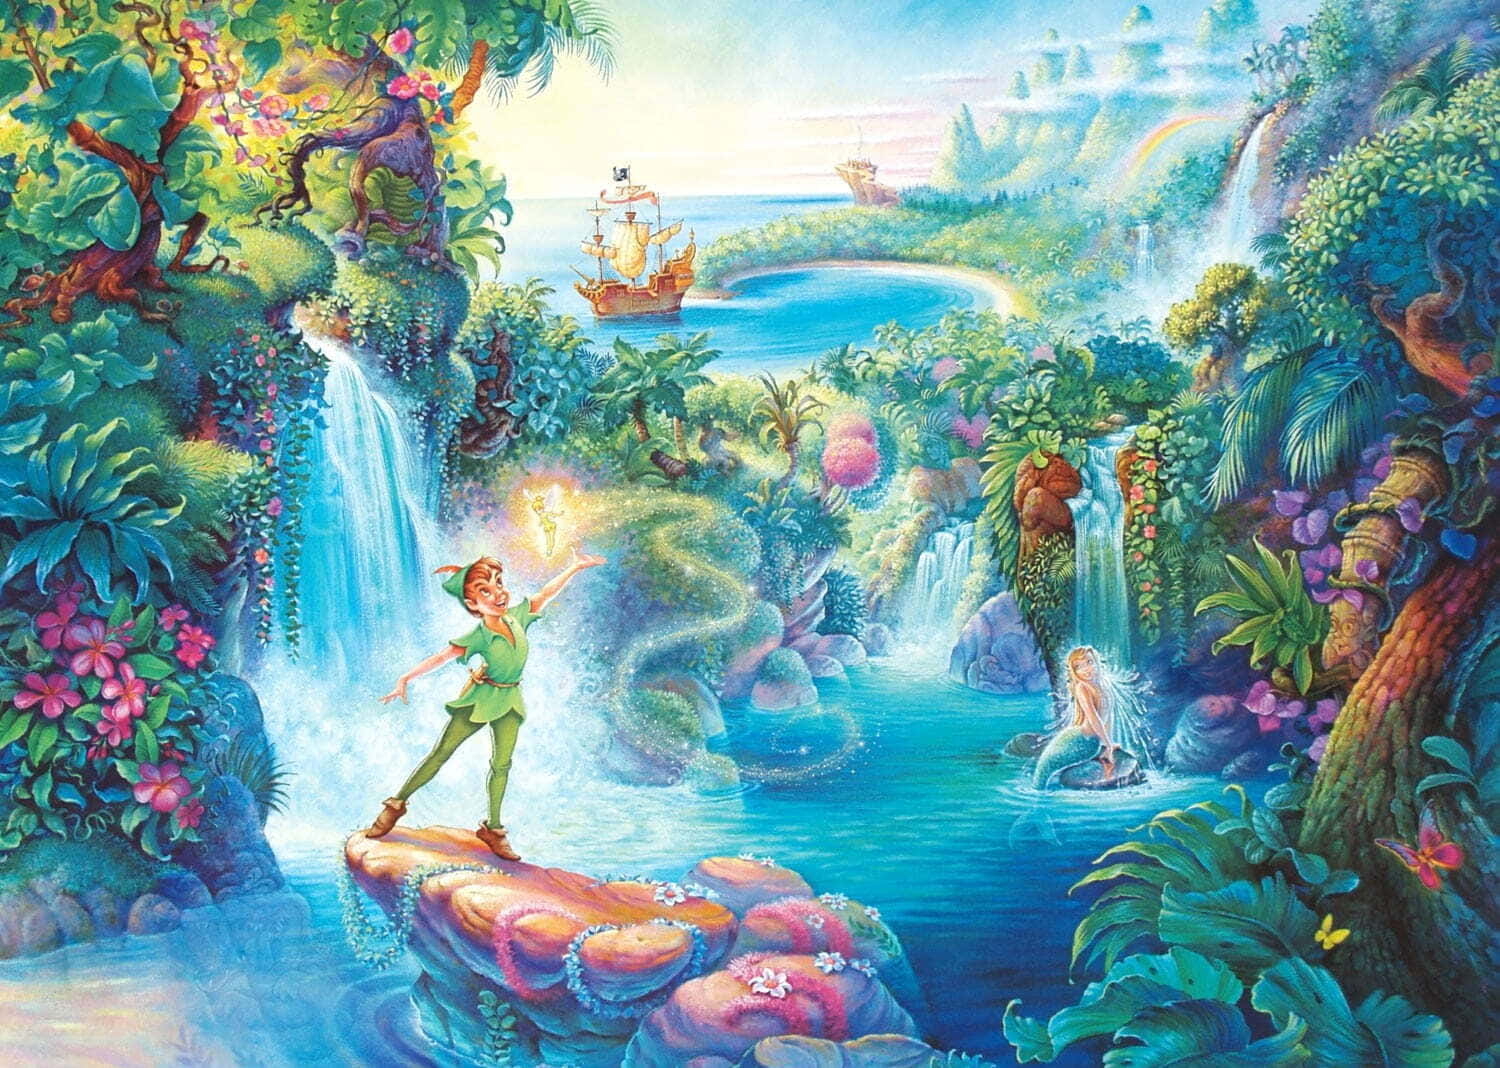 Hintergrundmit Peter Pan